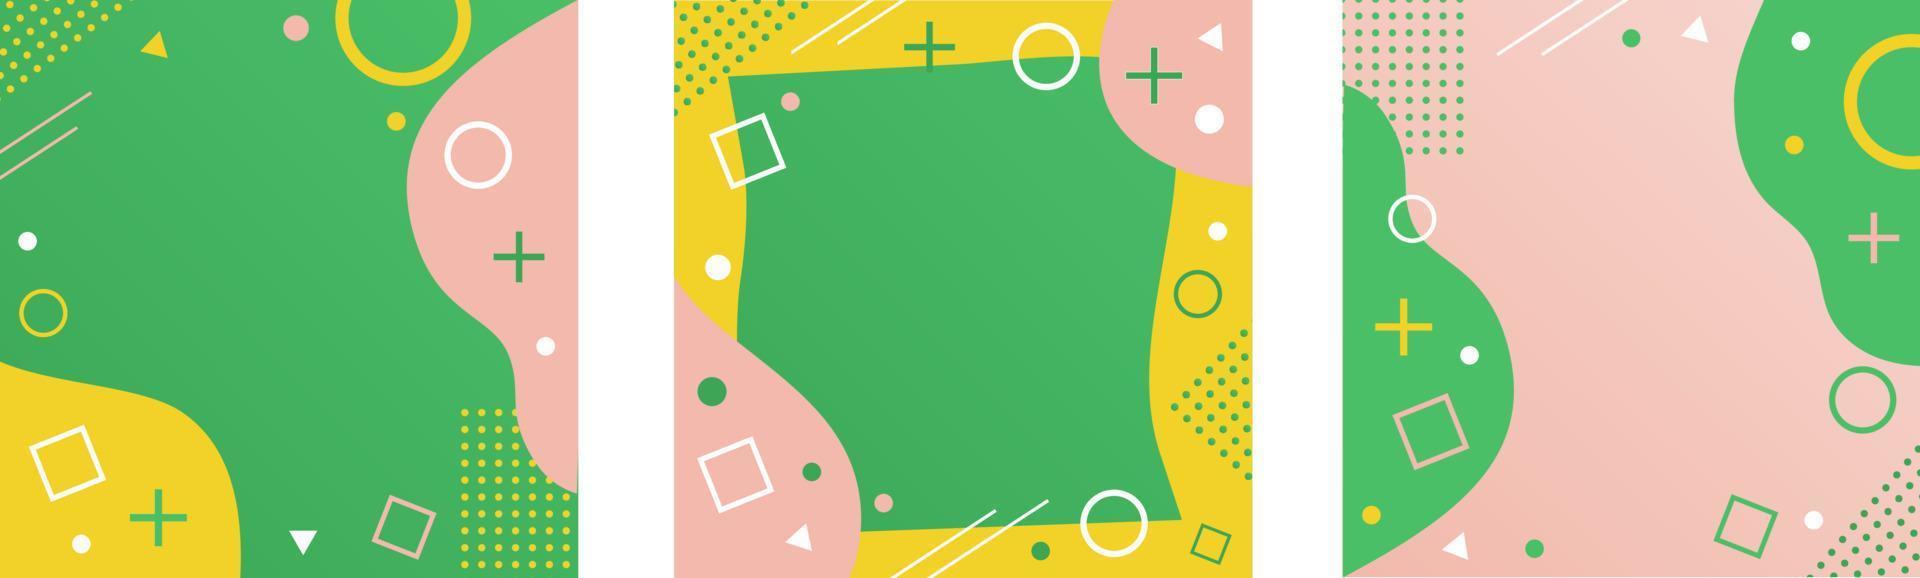 reeks van Memphis stijl achtergrond met abstract vormen. Hoes met een meetkundig patroon in geel, groen en roze. vector illustratie van een sjabloon voor een brochure, advertentie, spandoek.